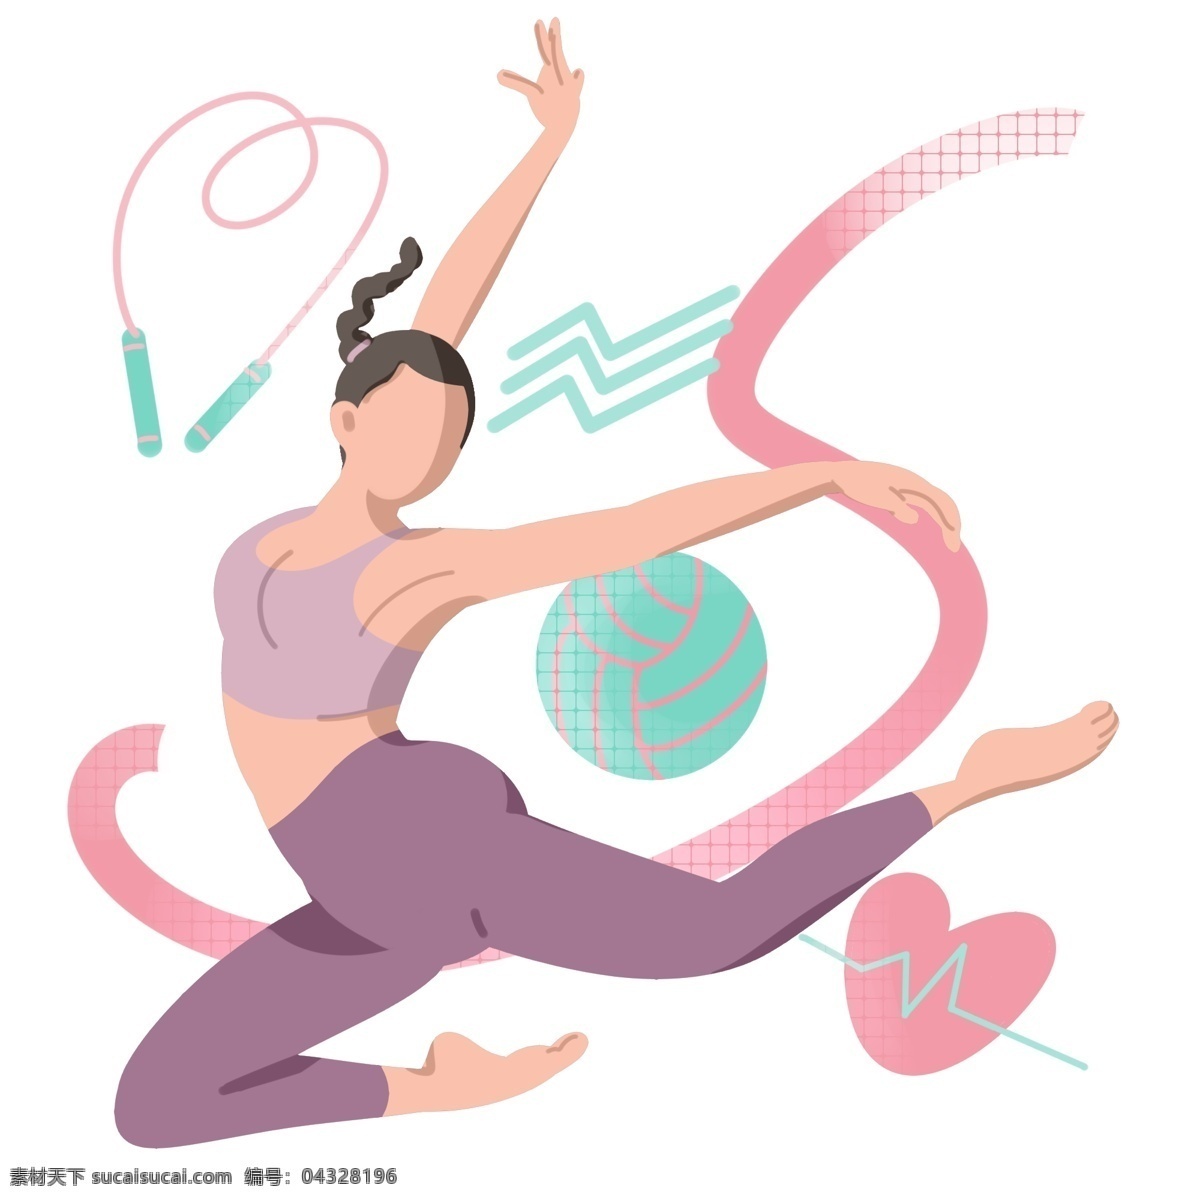 跳绳 运动 卡通 插画 跳绳的运动 卡通插画 健身运动 活动筋骨 体育项目 强身健体 漂亮的女孩